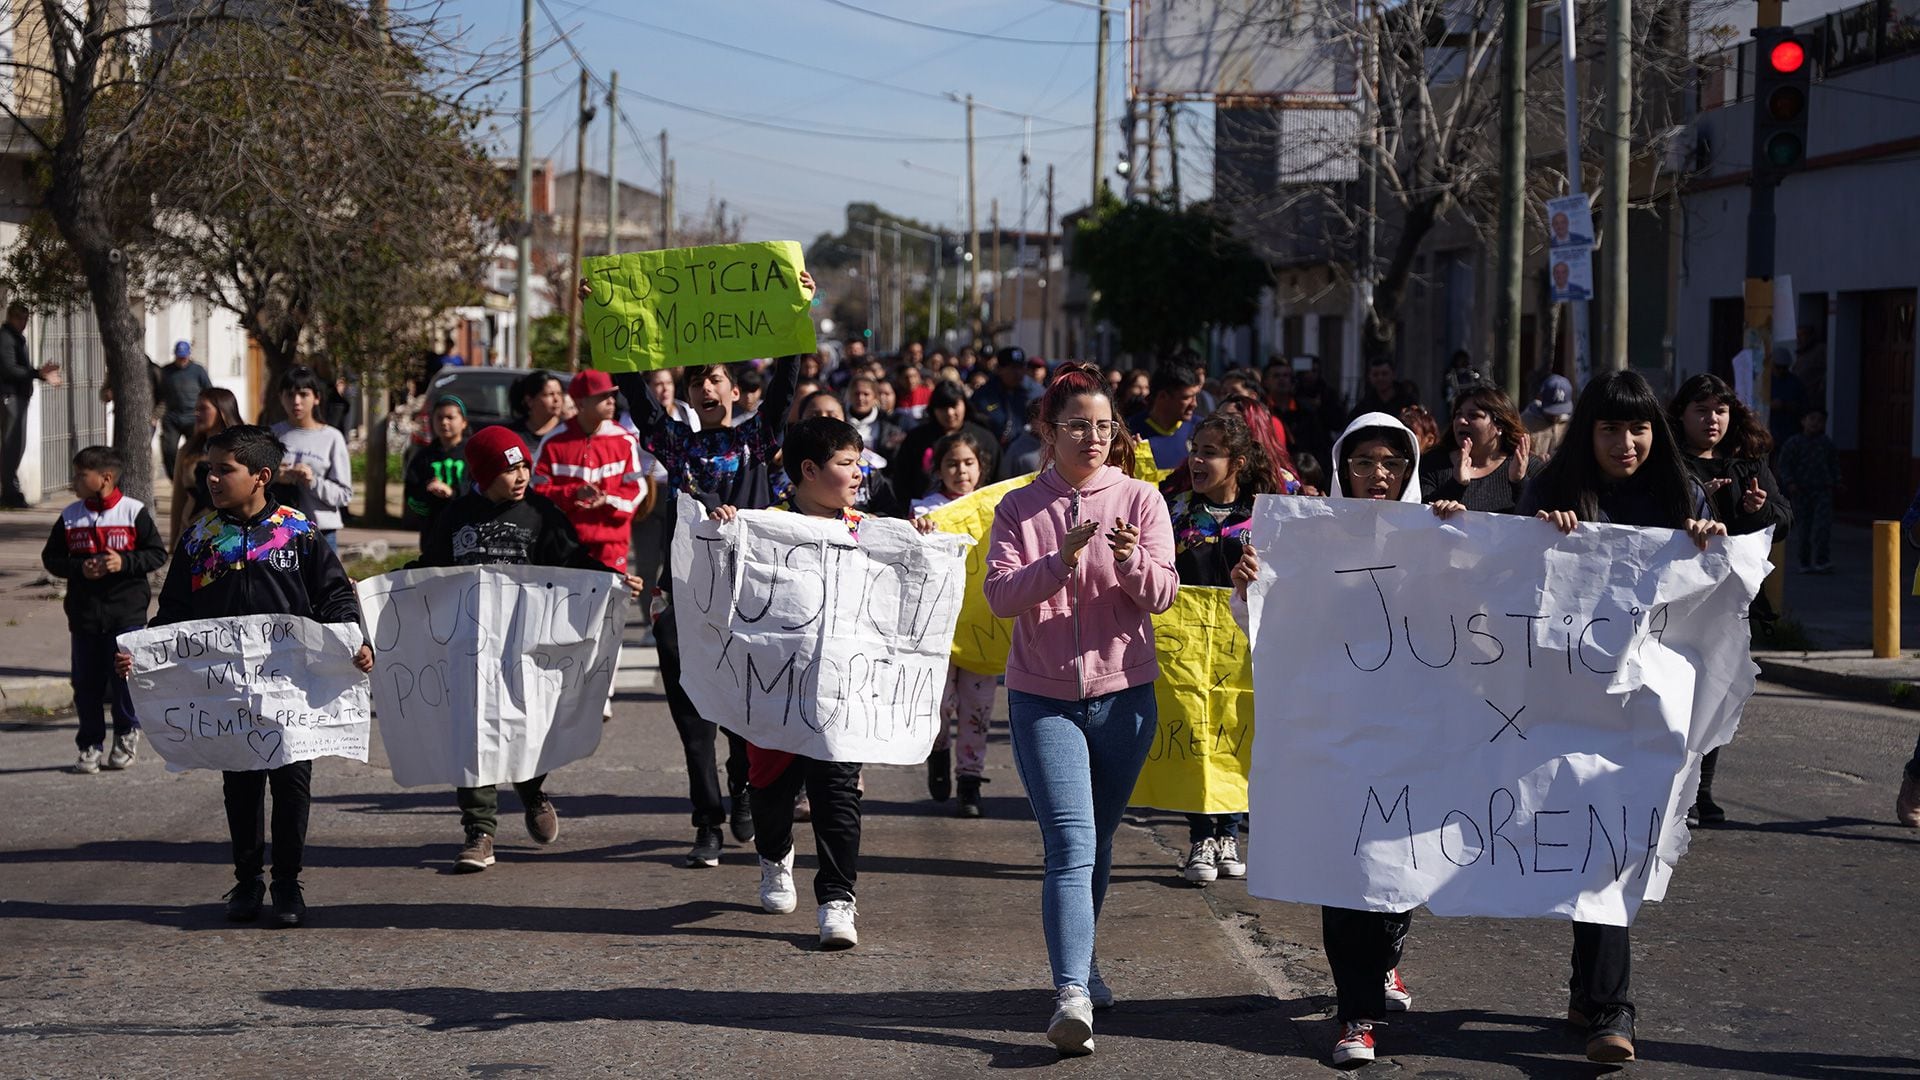 Marcha por el asesinato de Morena Domínguez (Foto: Franco Fafasuli)